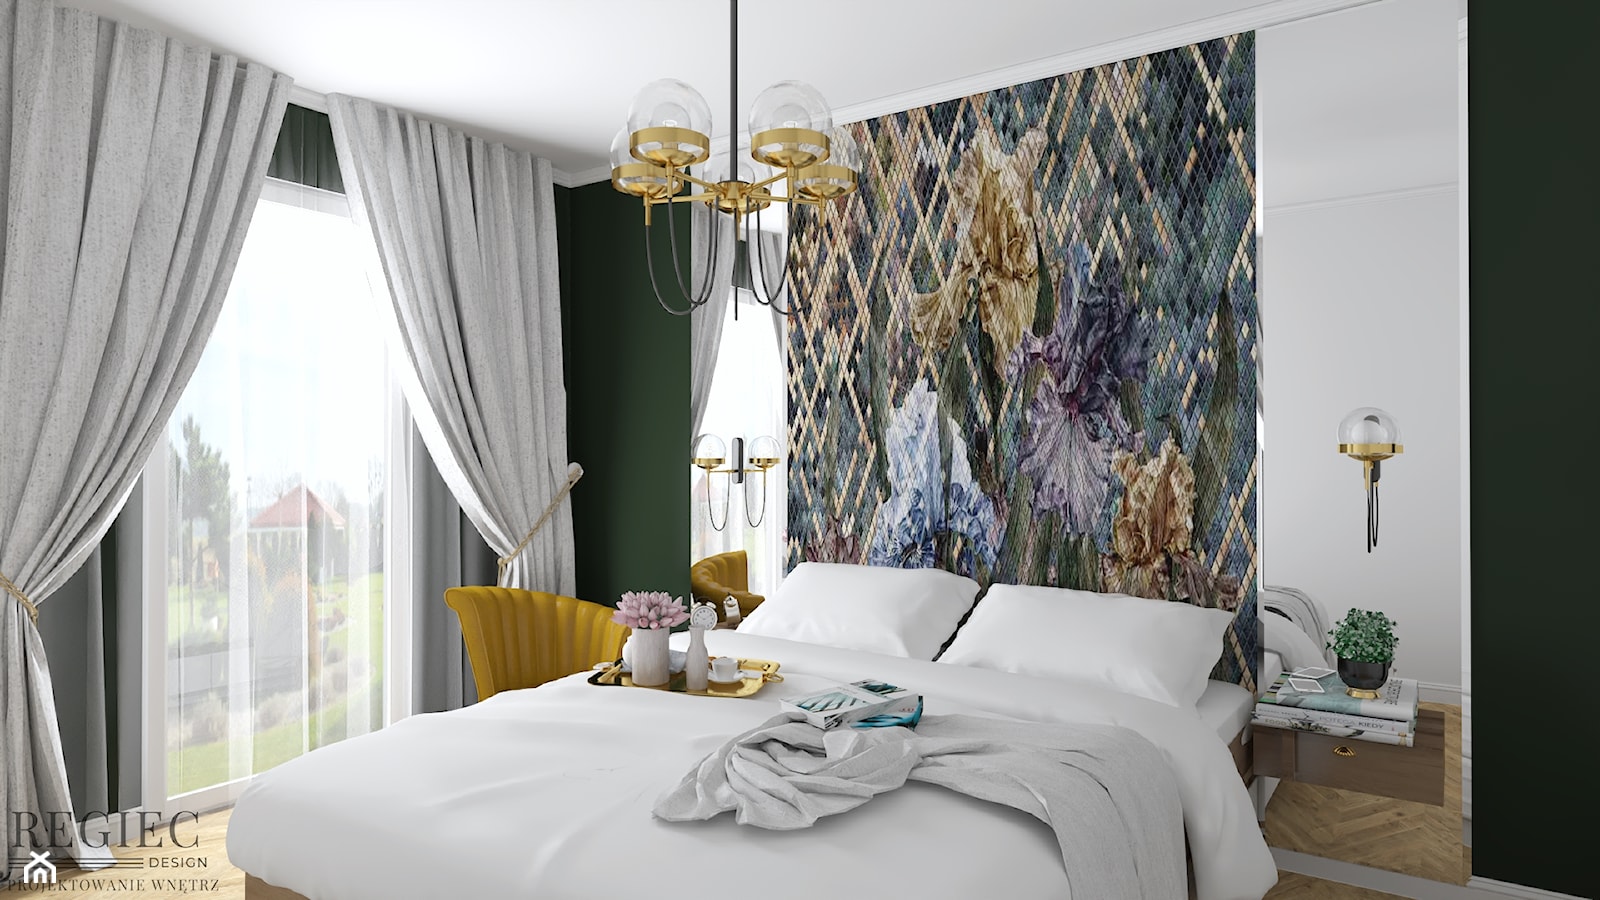 Sypialnia z zieloną ścianą - zdjęcie od Aleksandra Regiec - projektowanie wnętrz - Homebook